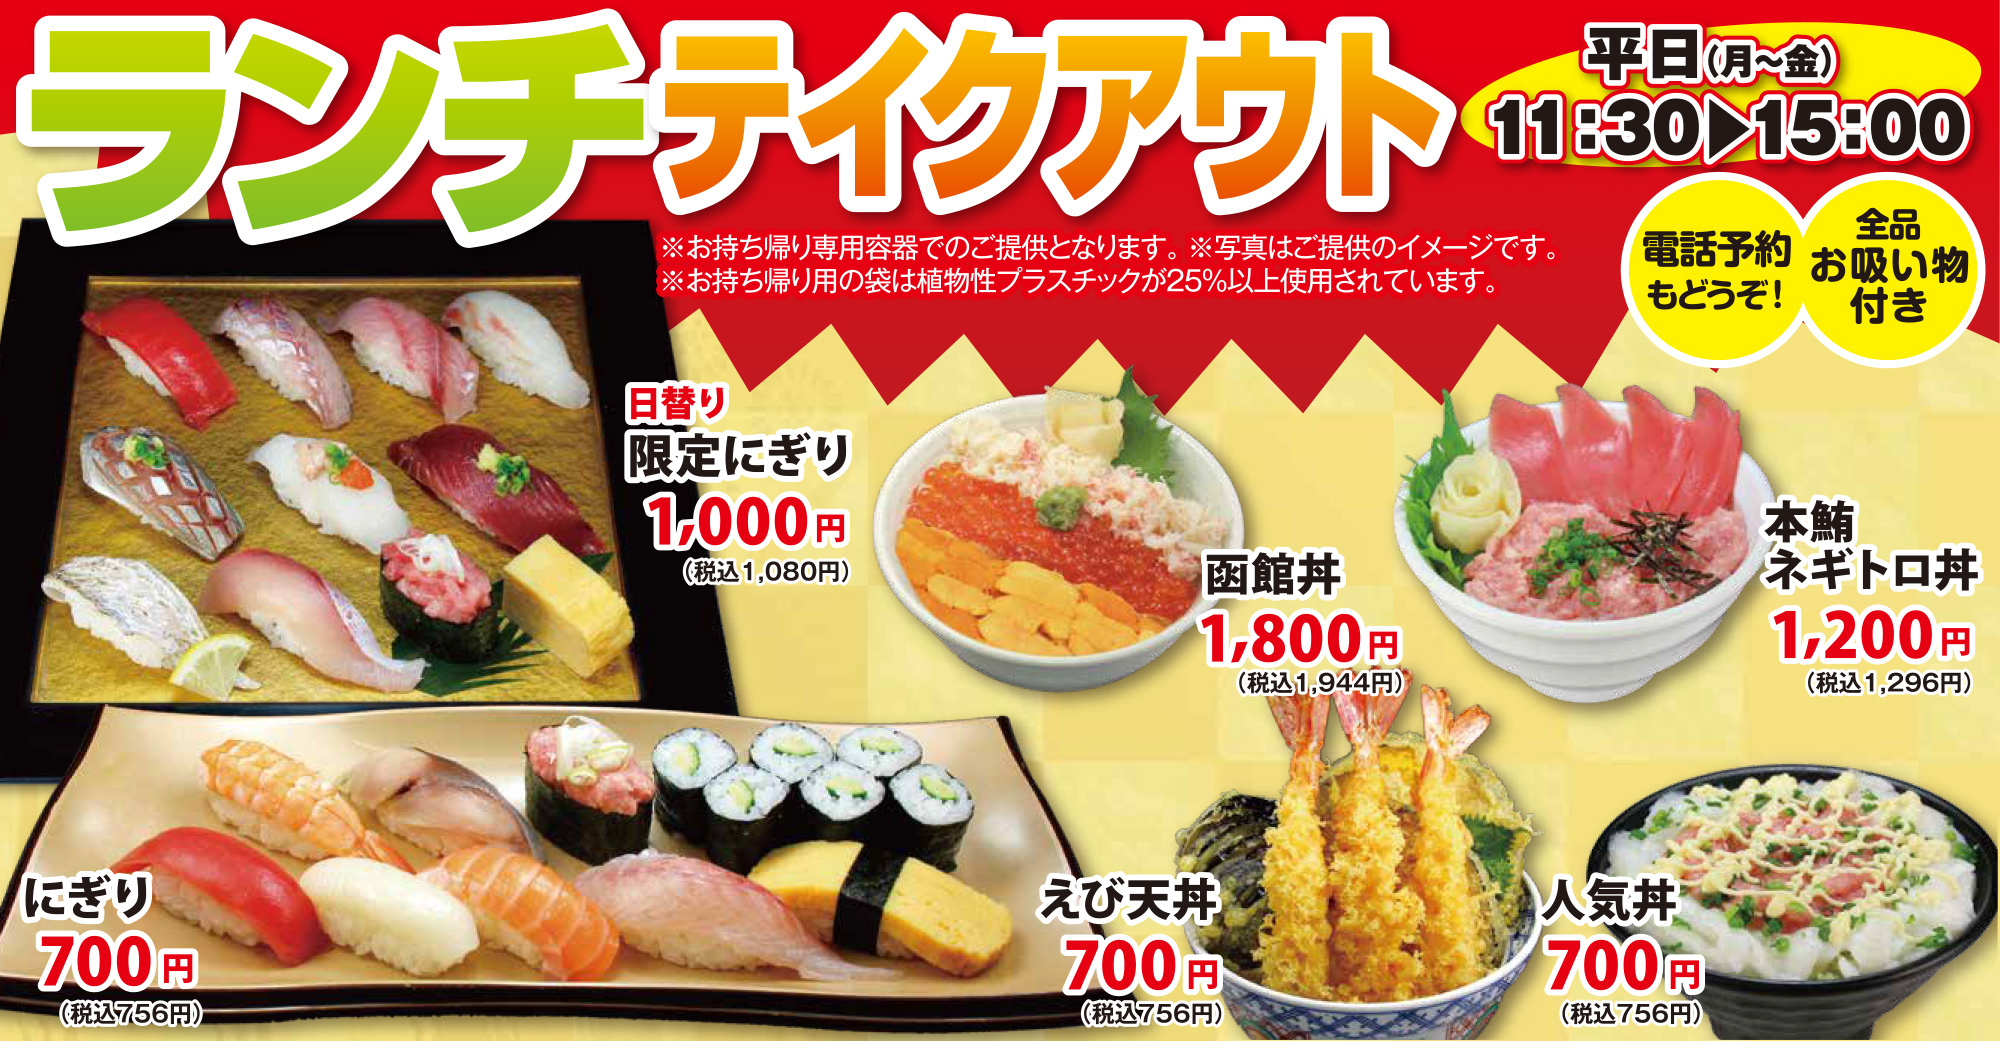 独楽寿司 まさのすけ本店 神奈川 多摩地区の旬を握る 鮮度を握る 本格板前回転寿司